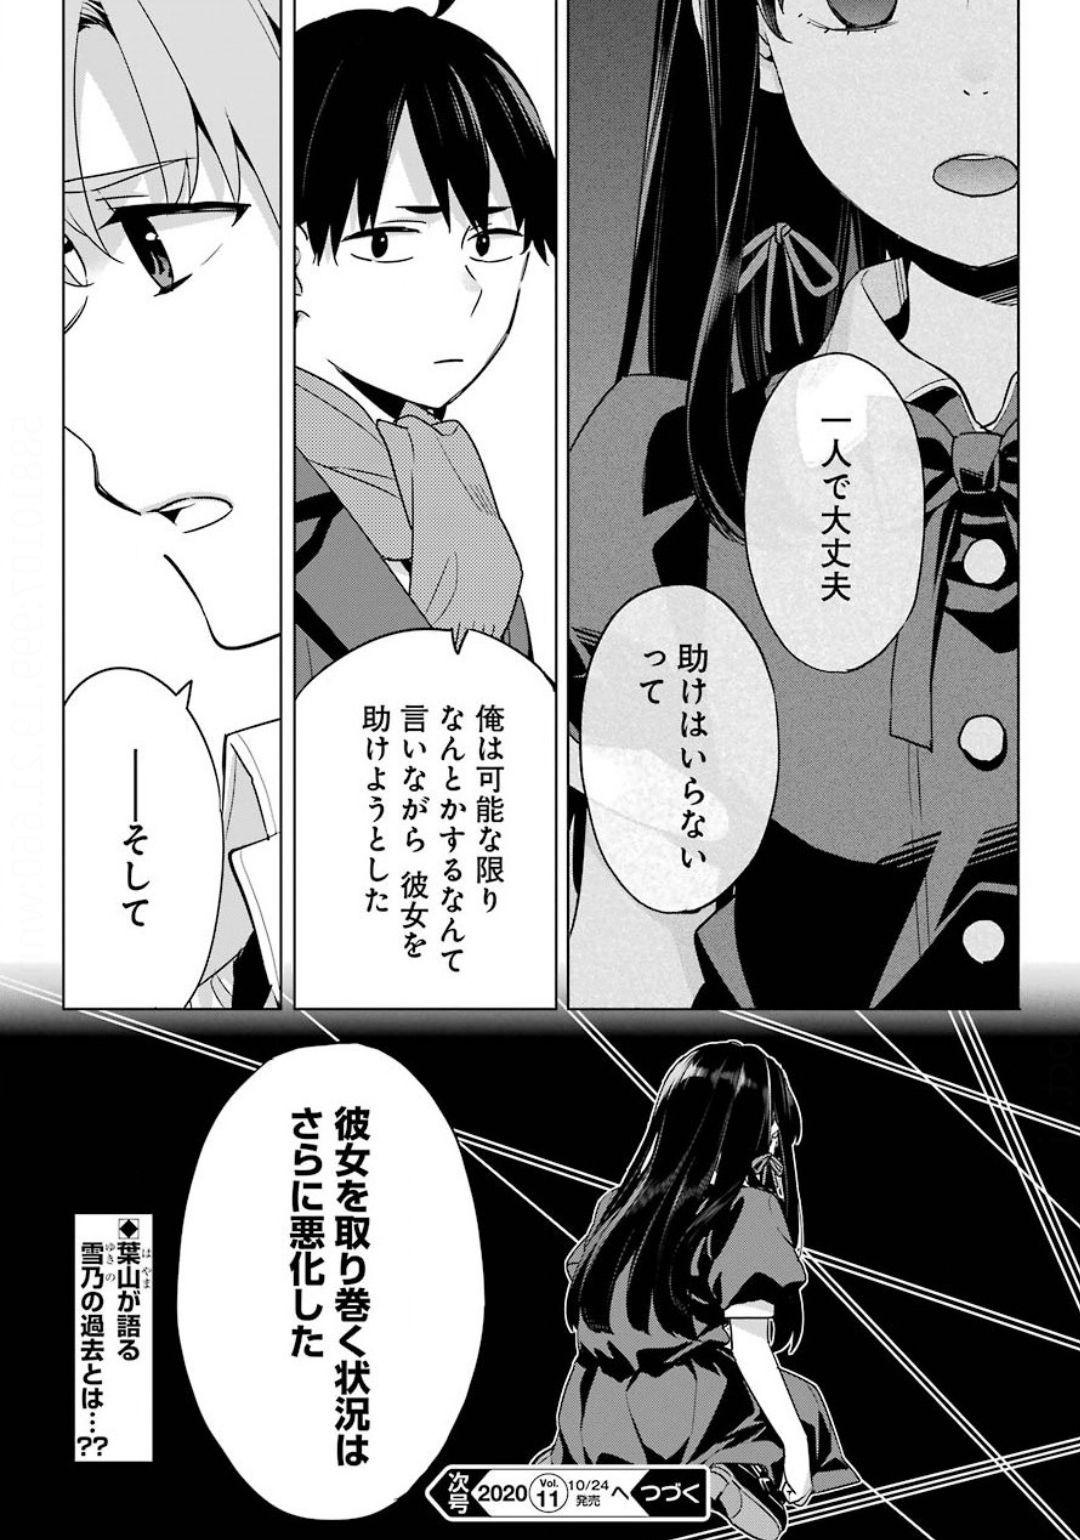 Yahari Ore no Seishun Rabukome wa Machigatte Iru. - Monologue - Chapter 88 - Page 32